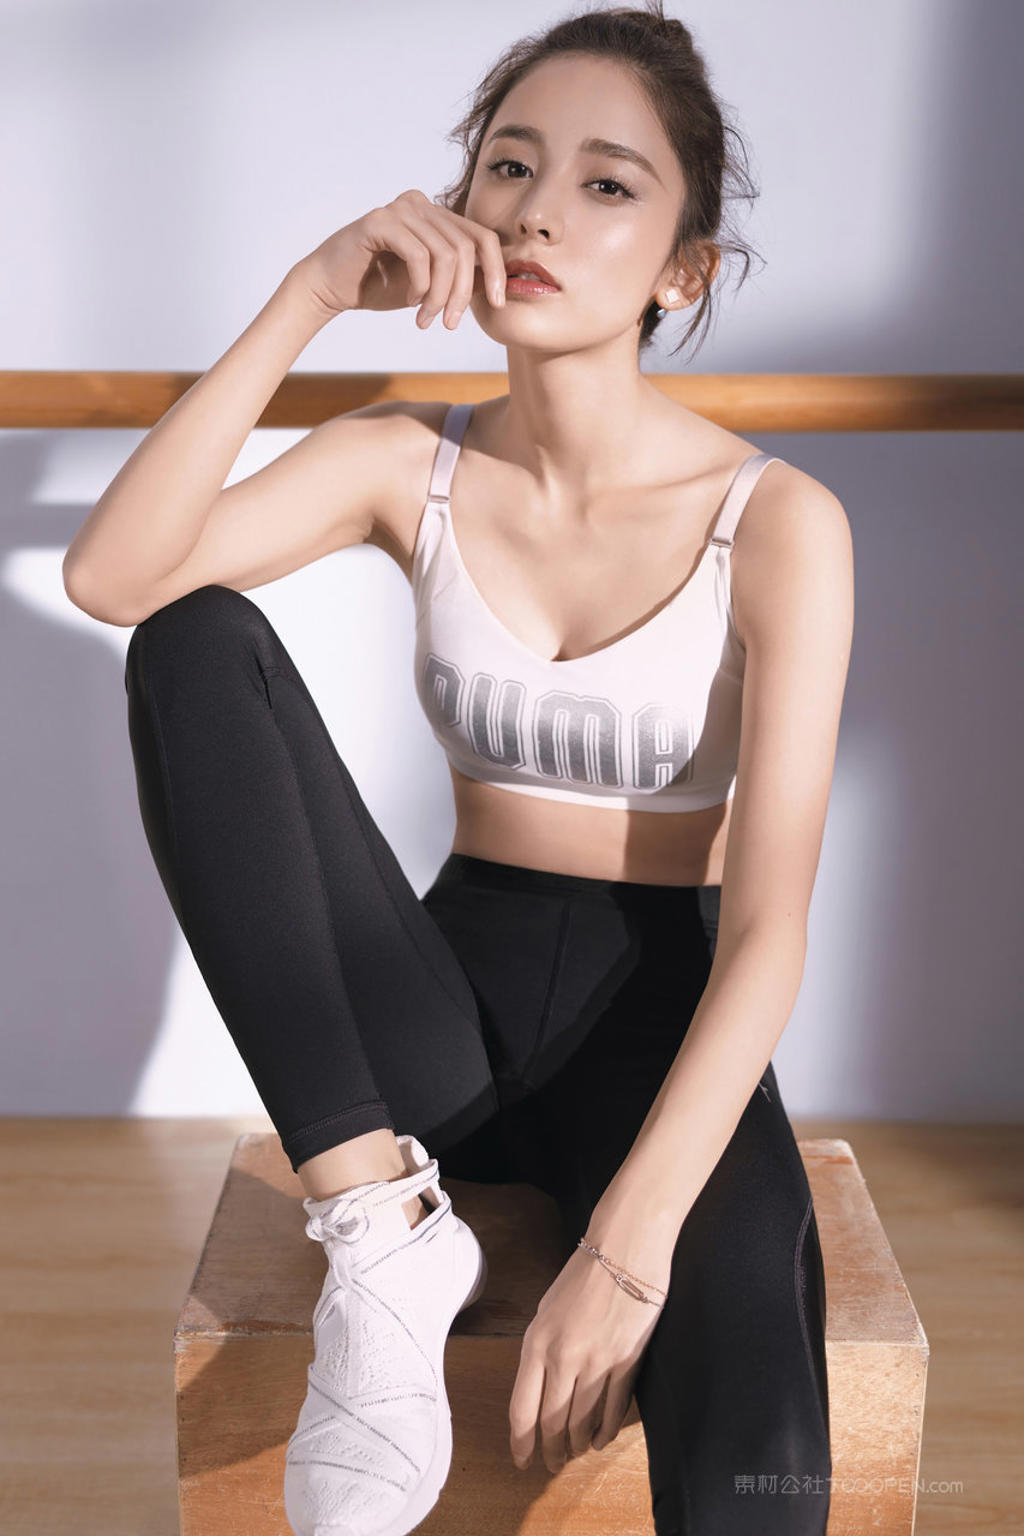 中国女明星古力娜扎性感紧身裤运动写真图片